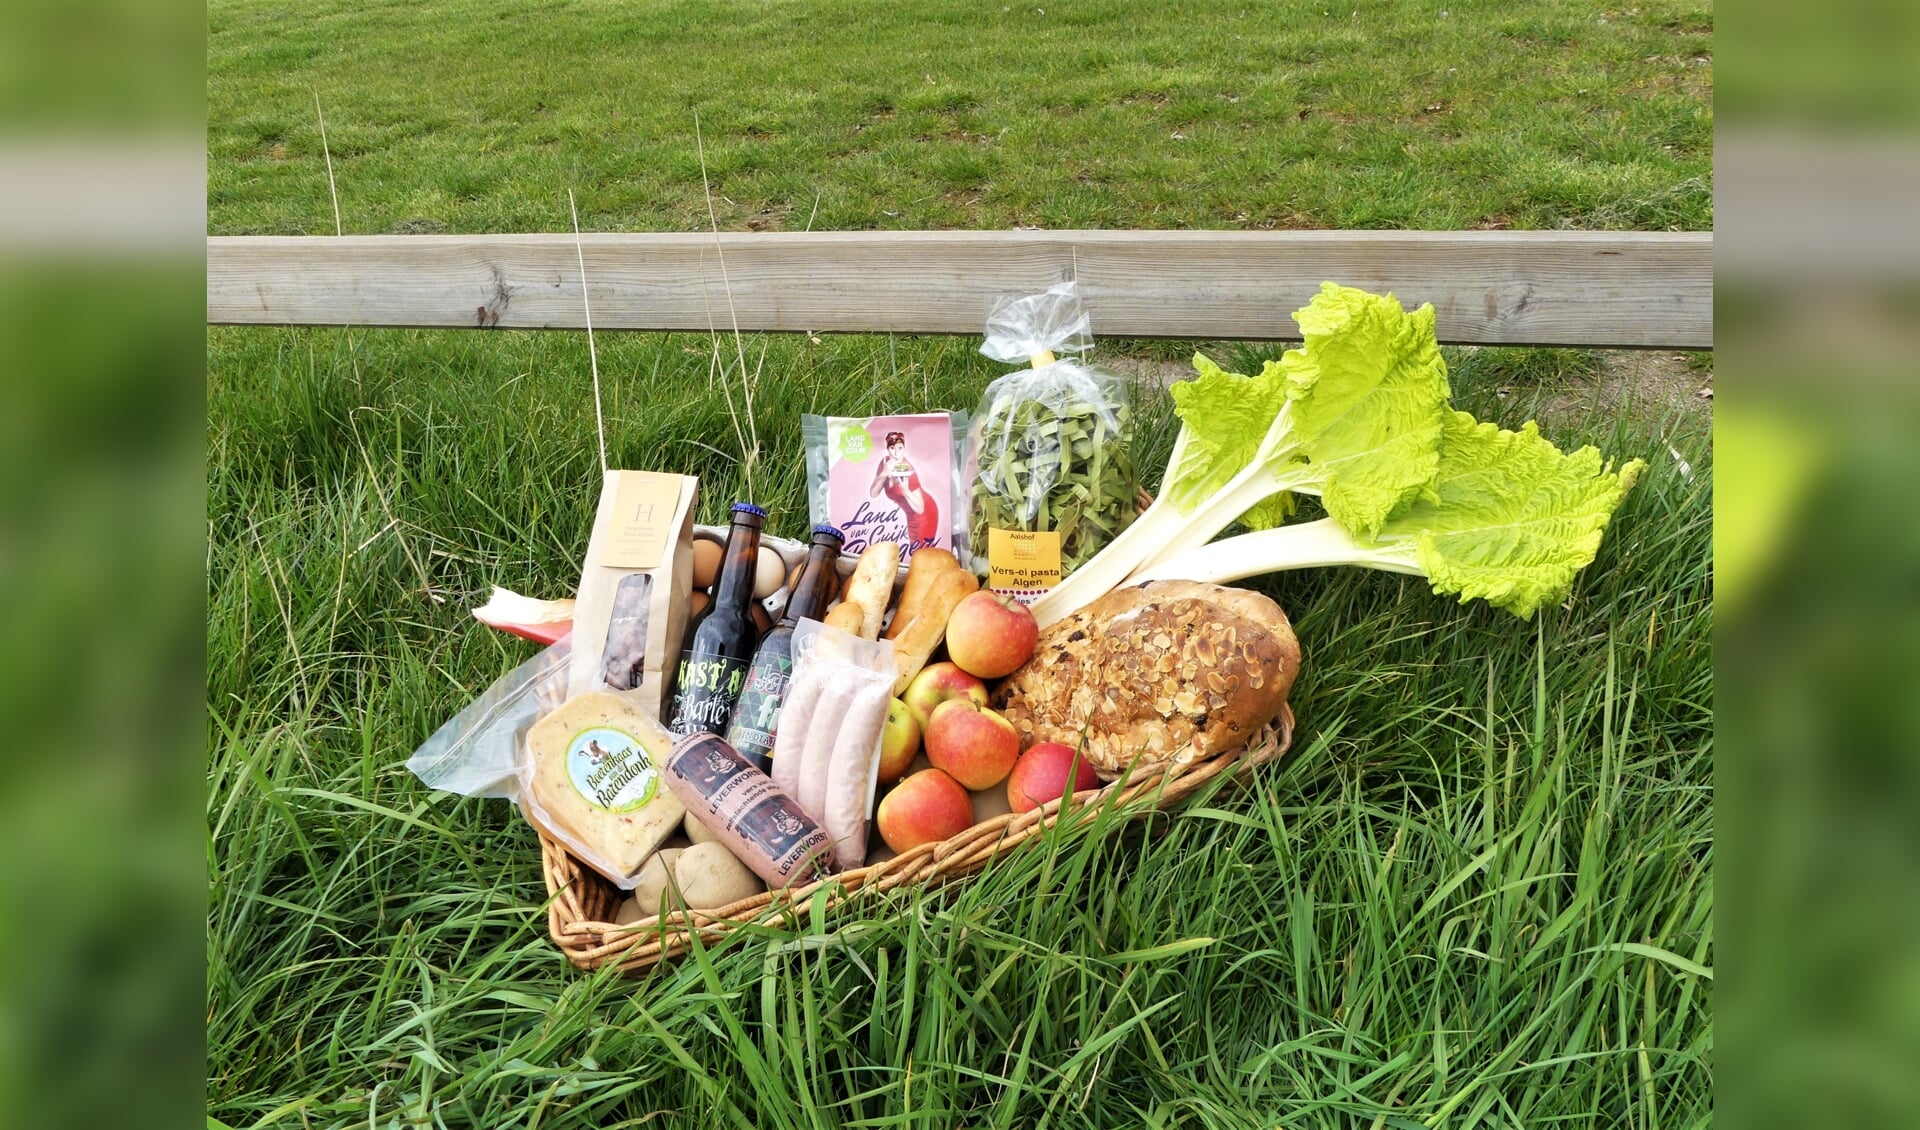 De foodbox bevat diverse streekproducten uit heel het Land van Cuijk.